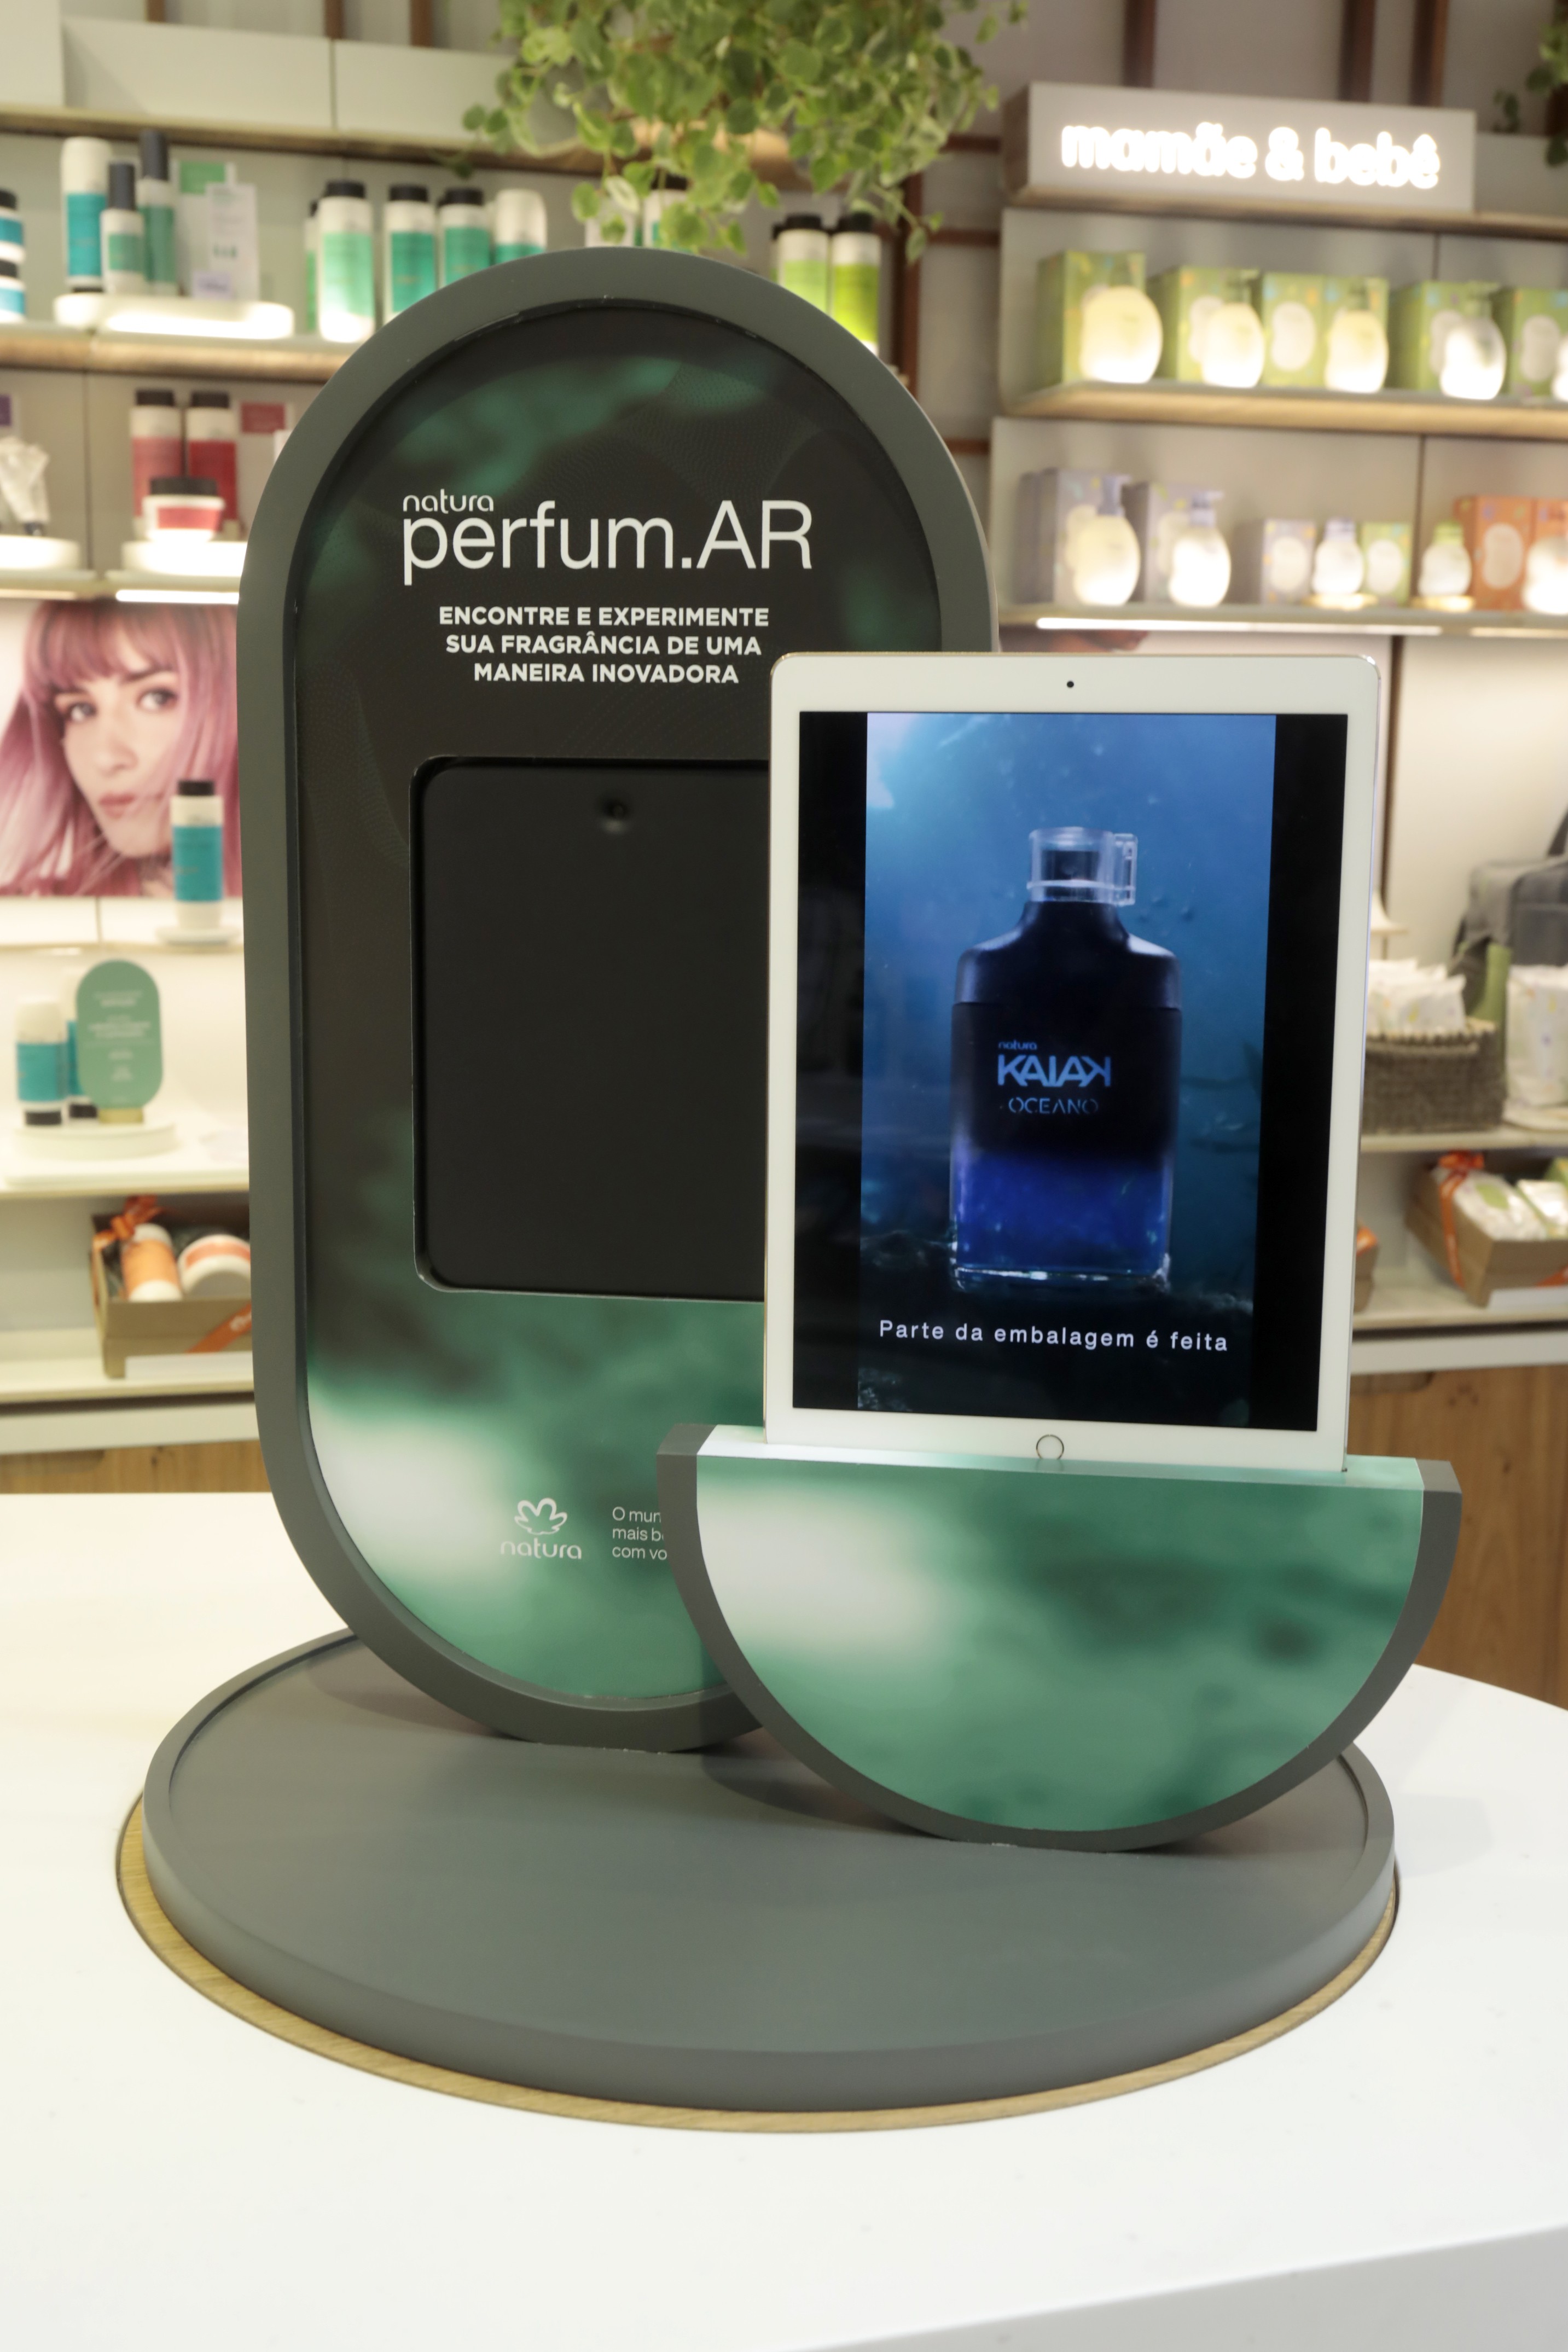 Espaço digital perfum.Ar, na nova loja conceito da Natura (Foto: divulgação)